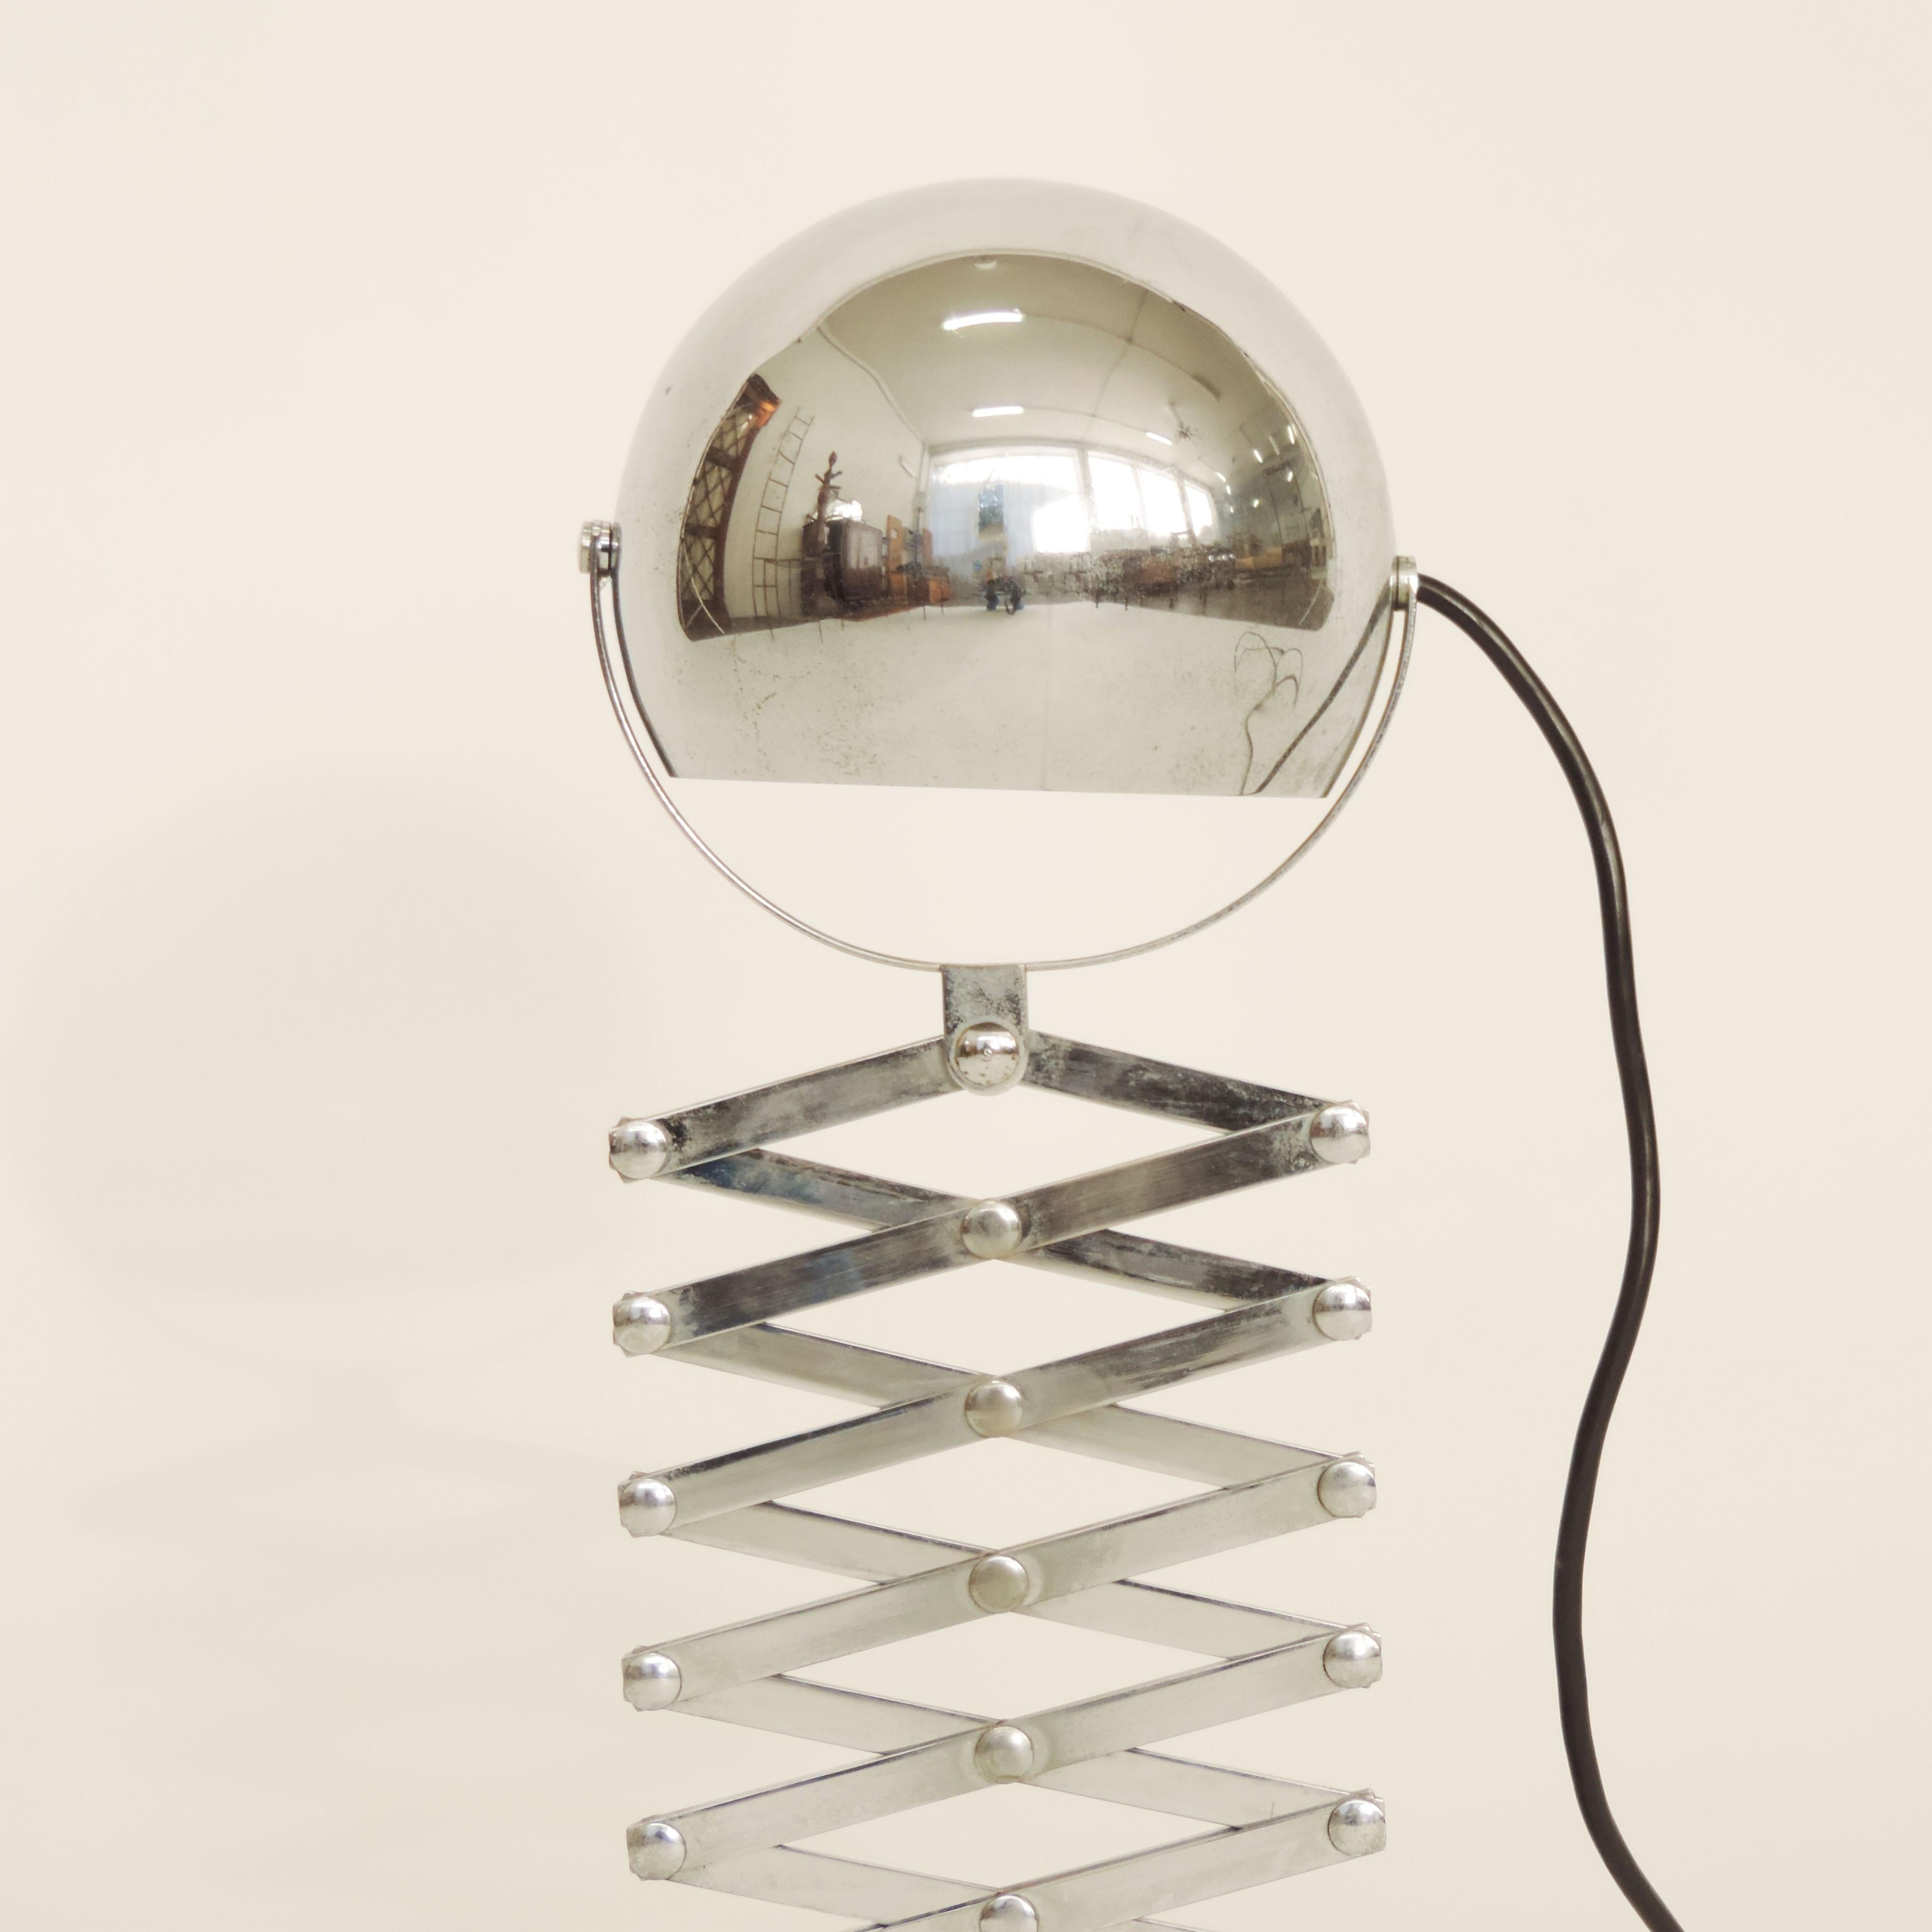 Ingo Maurer chrome scissor table lamp for Design M, Germany, 1968.